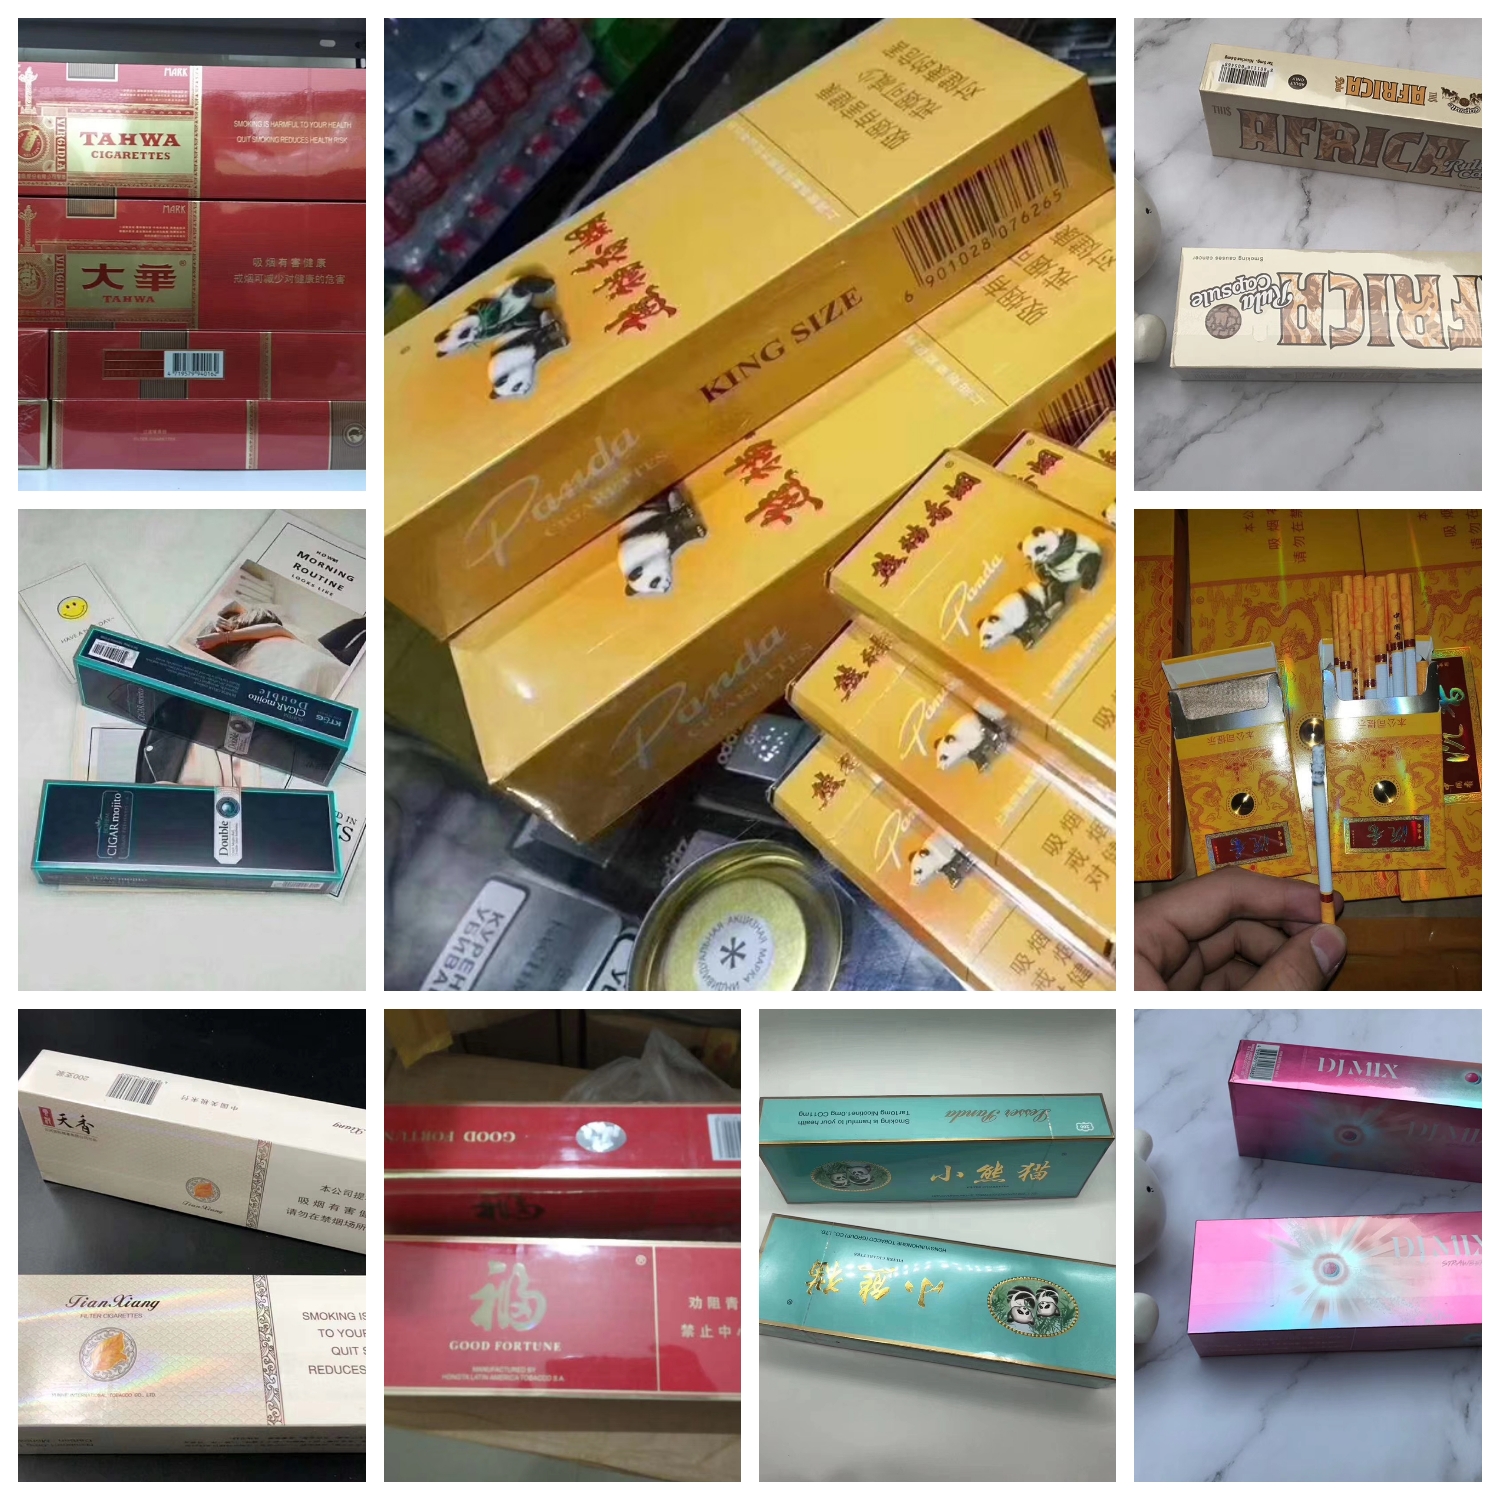 越南烟为什么这么便宜_越南烟_越南烟的品牌大全图片